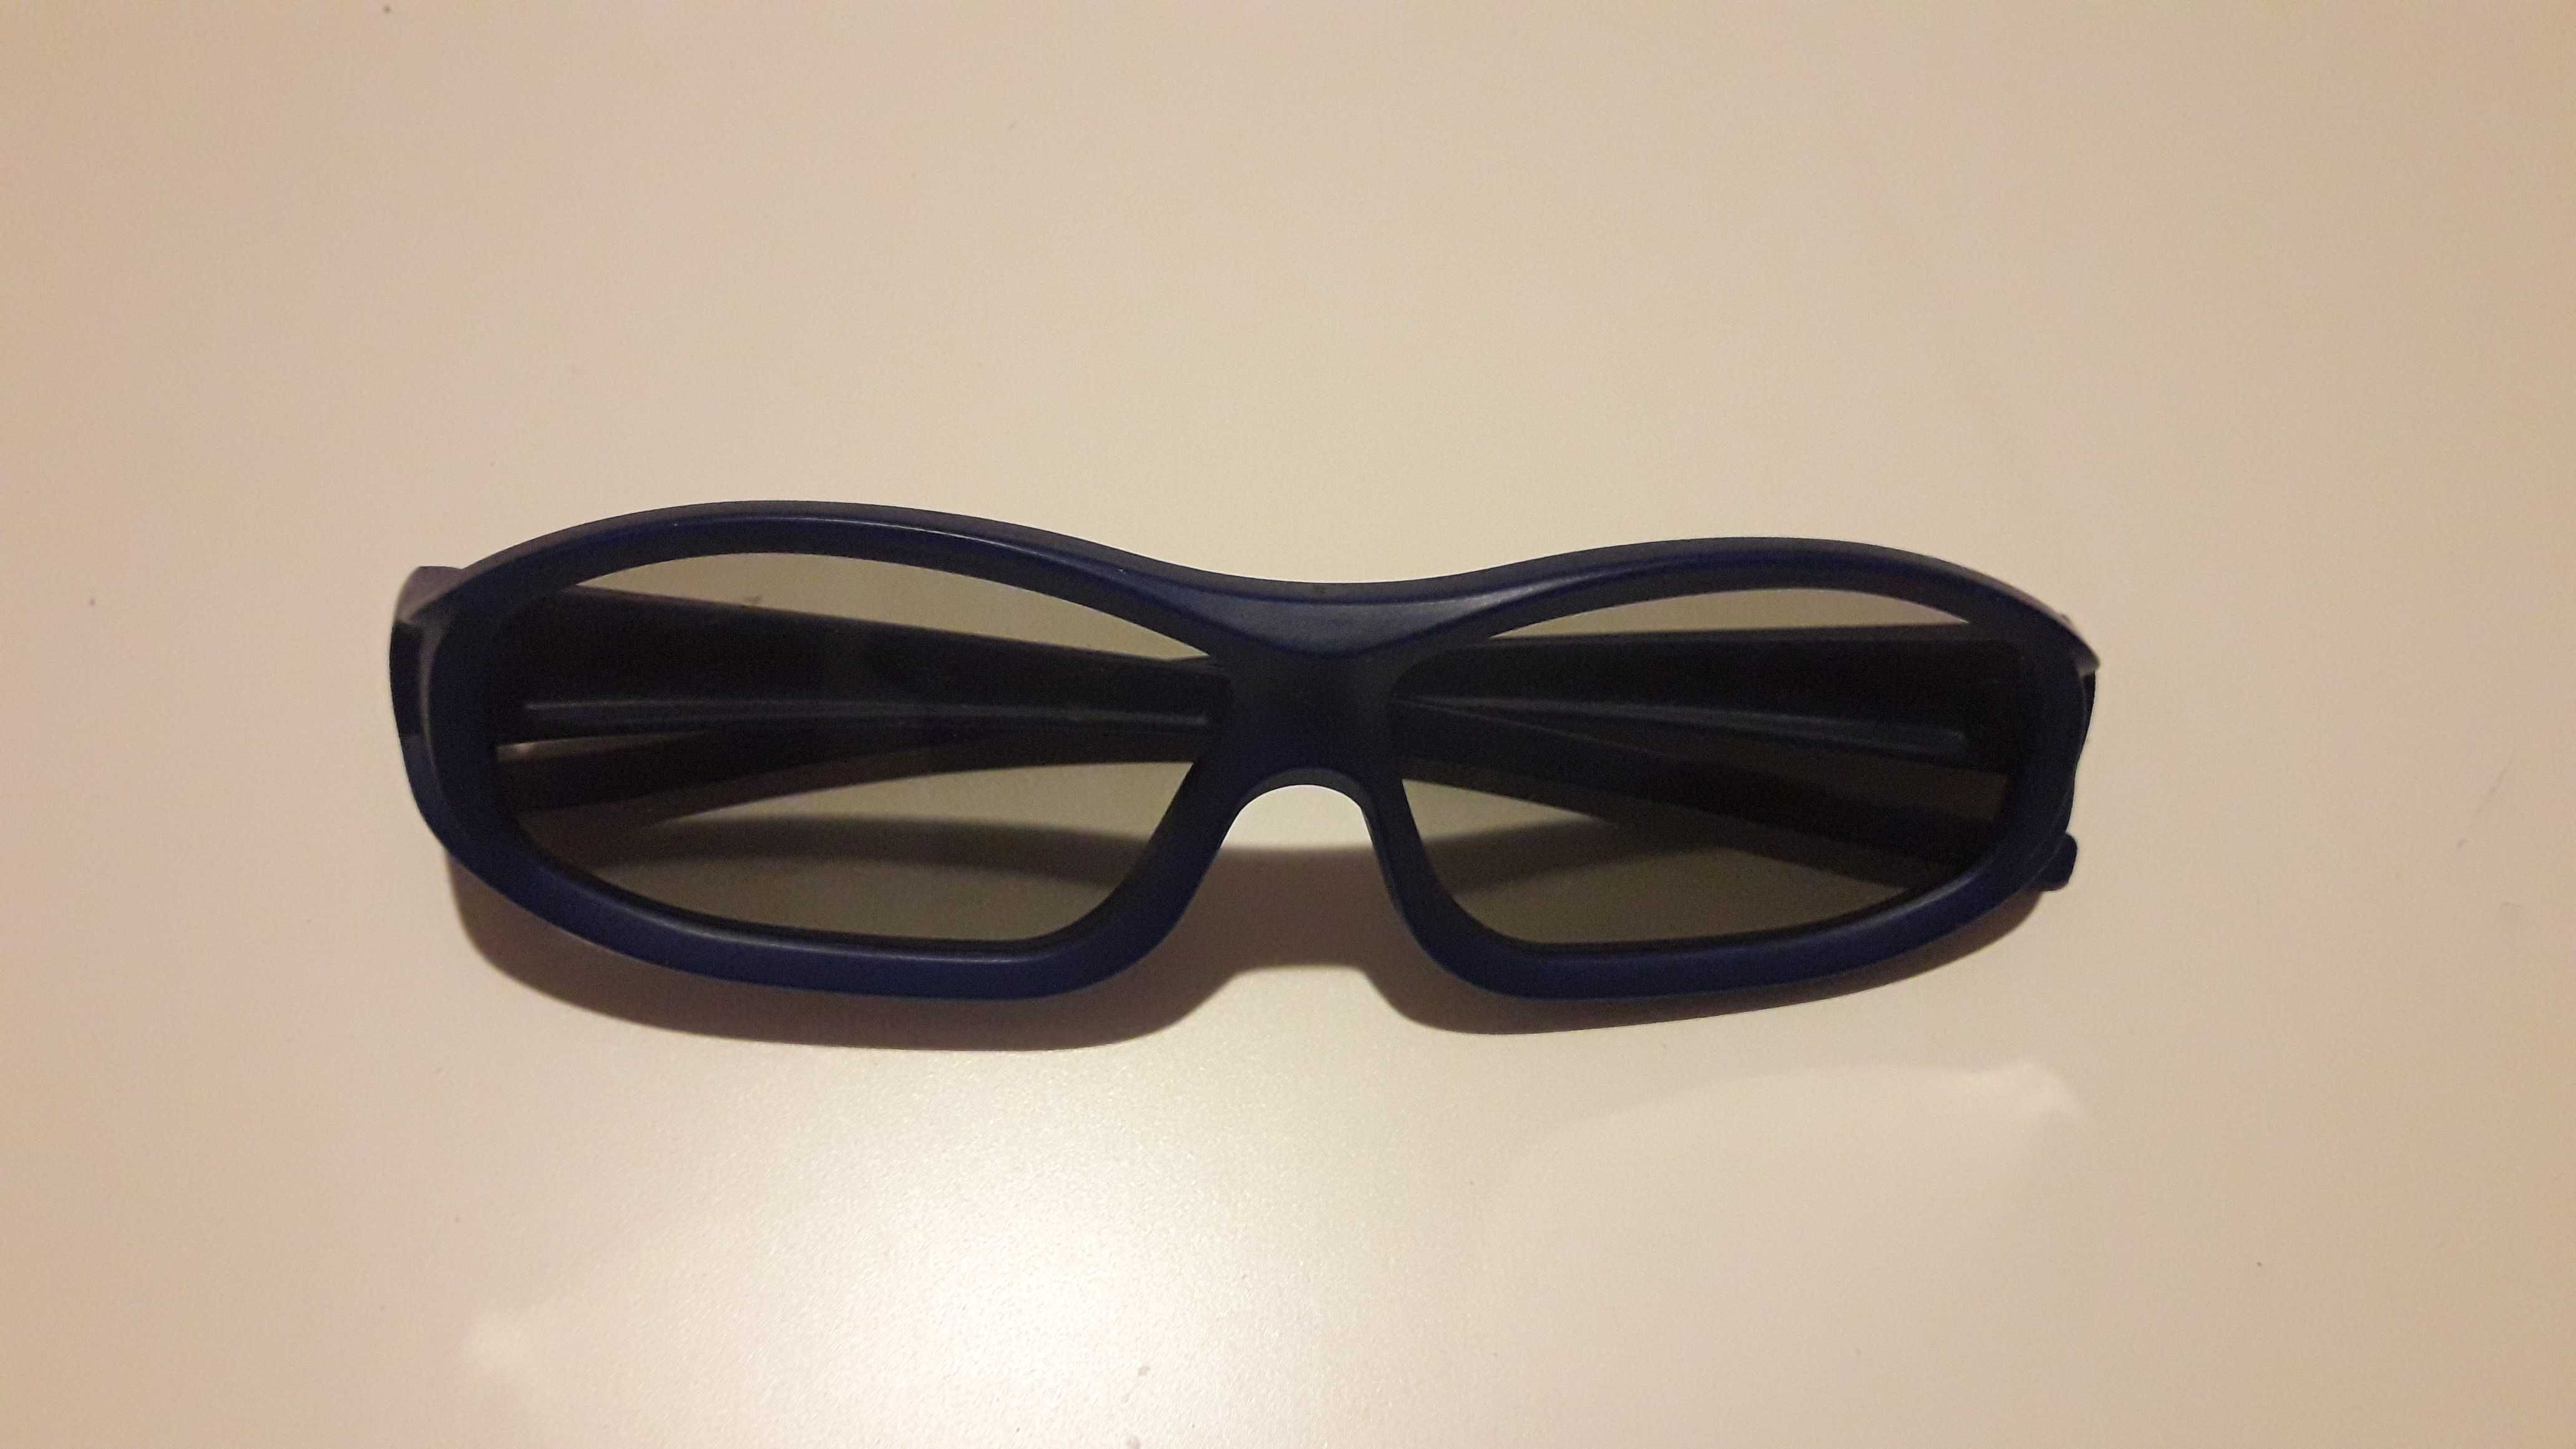 Okulary do oglądania filmów w technologii 3D.